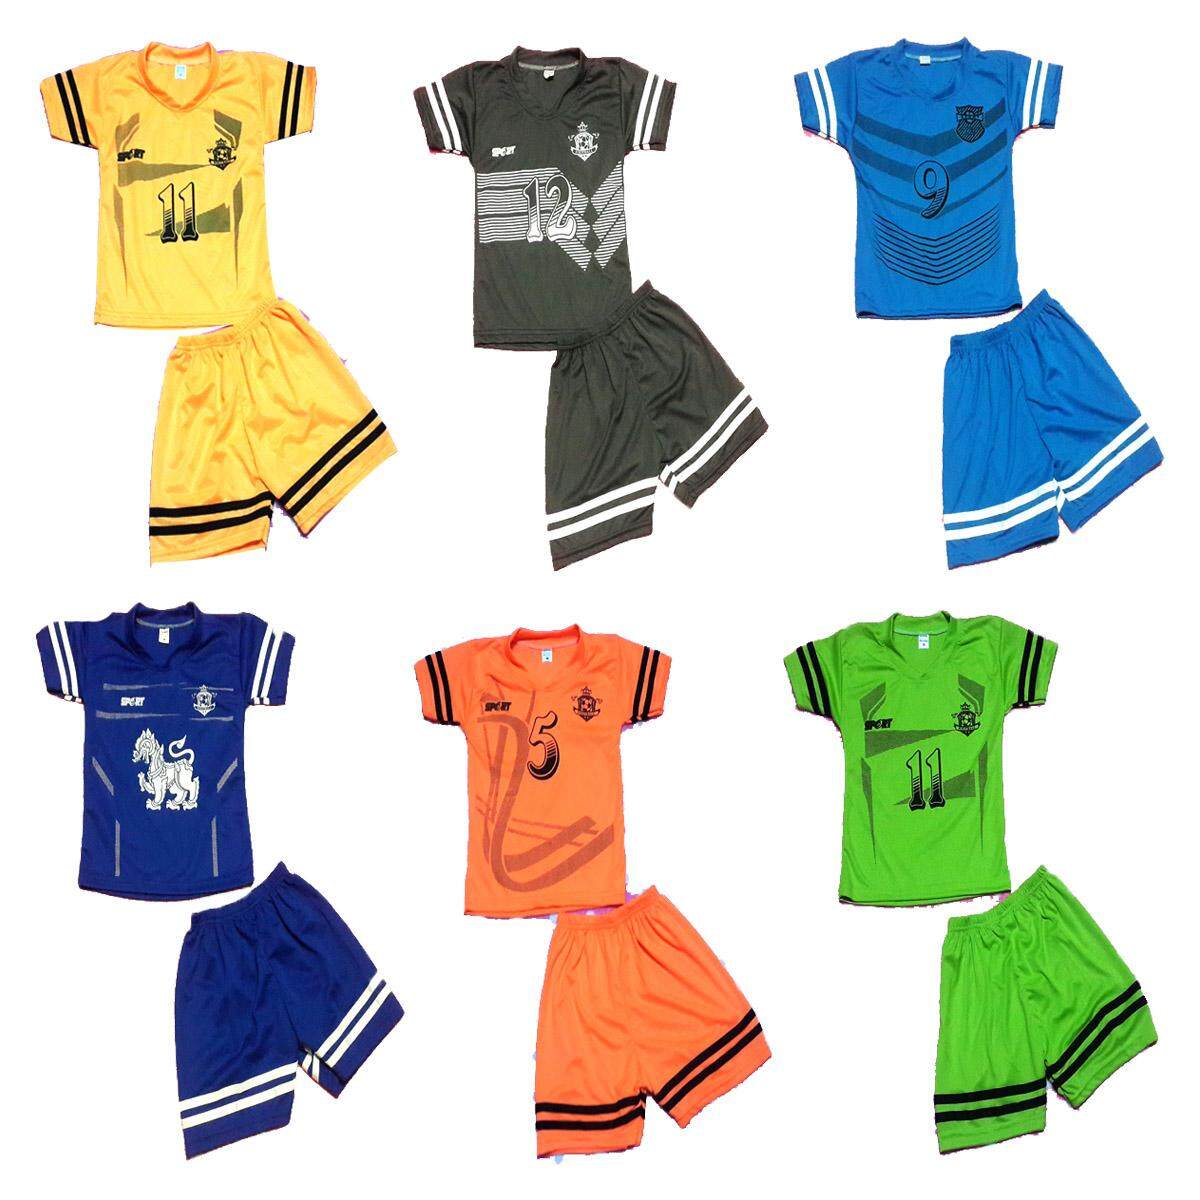 ราคา ชุดเด็ก ชุดบอล เสื้อแขนสั้น กางเกงขาสั้น คละสี ผ้าลื่นเนื้อดี มี ไซต์ S,M,L,XL(1 แพ็ค มี 4 ชุด)